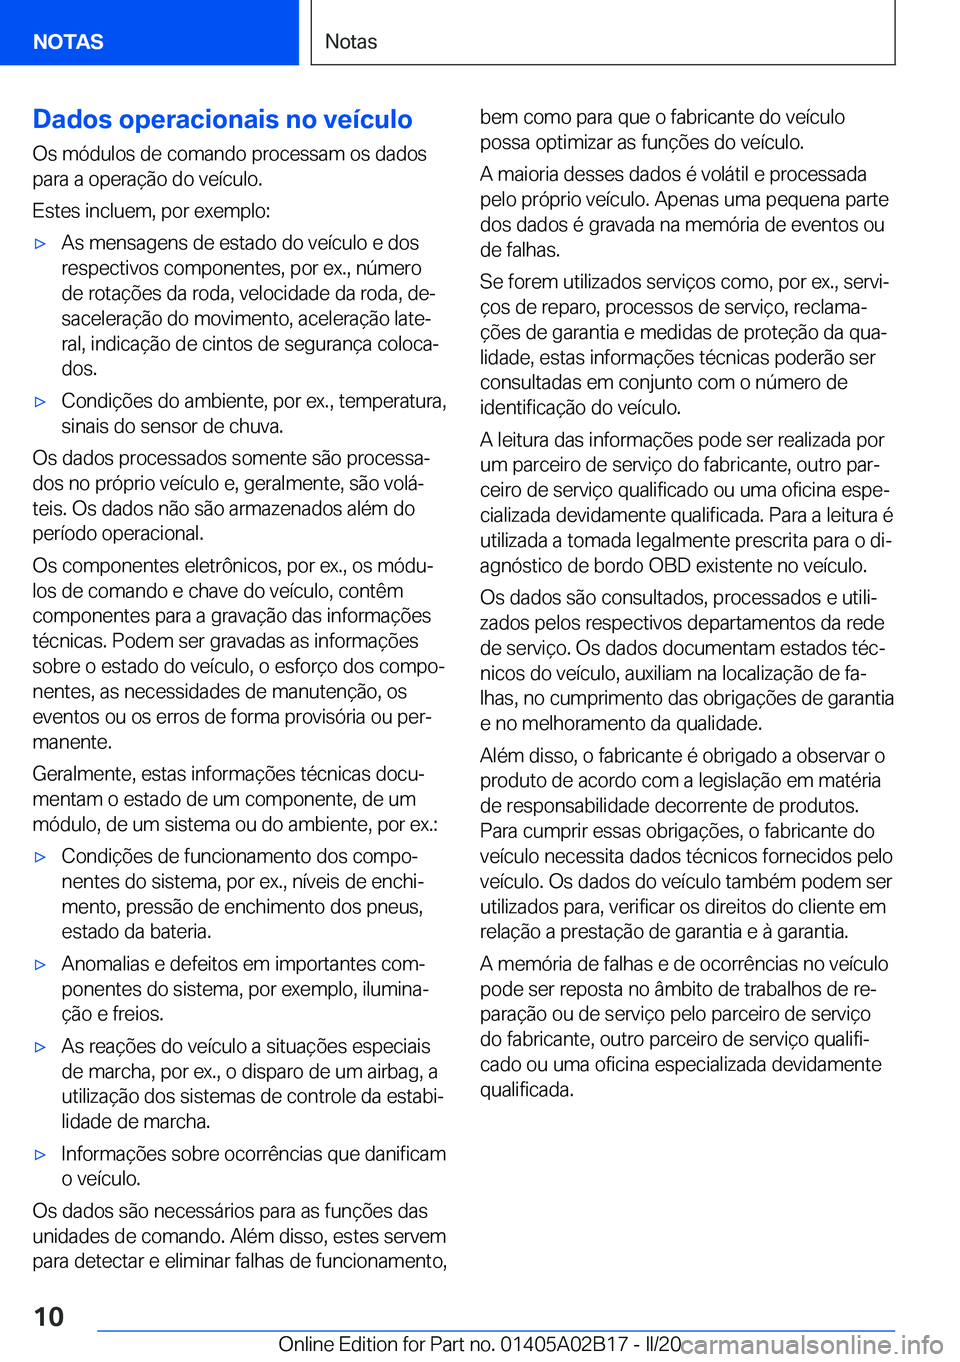 BMW X1 2020  Manual do condutor (in Portuguese) �D�a�d�o�s��o�p�e�r�a�c�i�o�n�a�i�s��n�o��v�e�